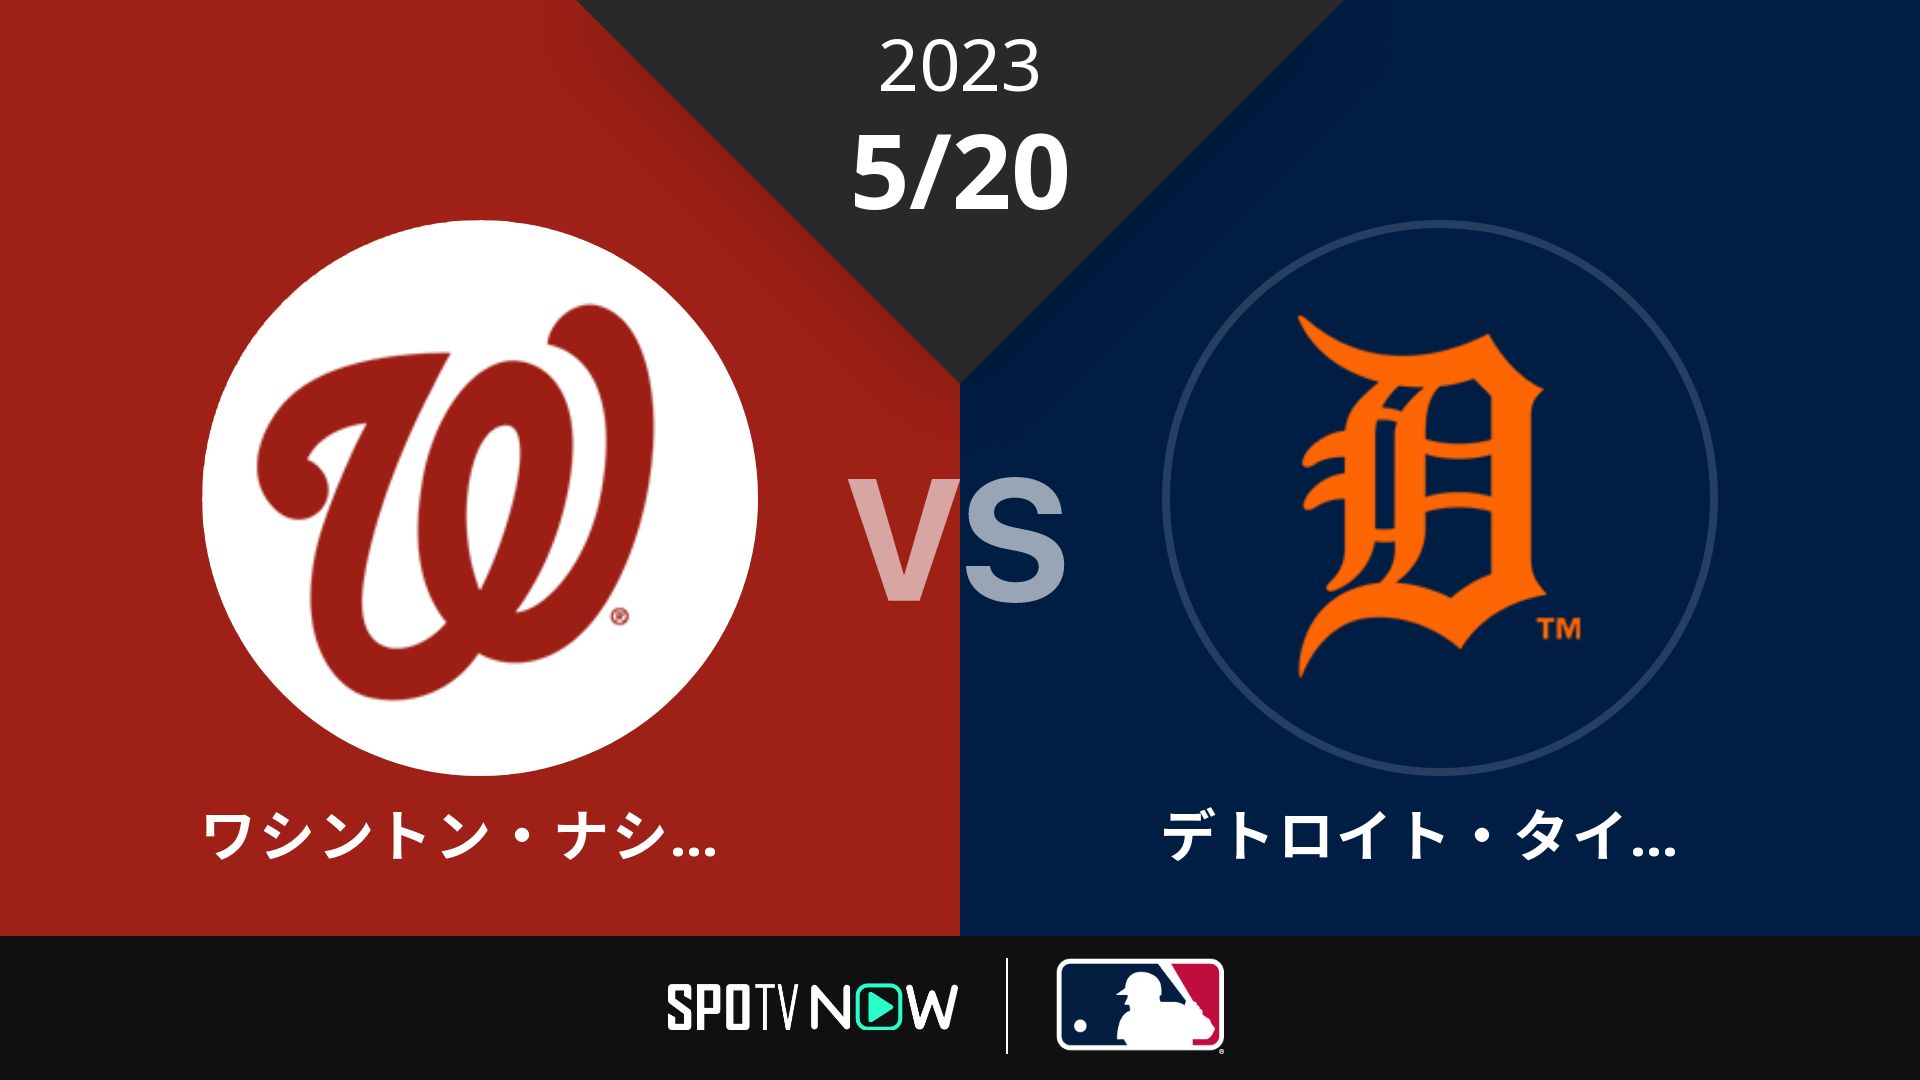 2023/5/20 ナショナルズ vs タイガース [MLB]